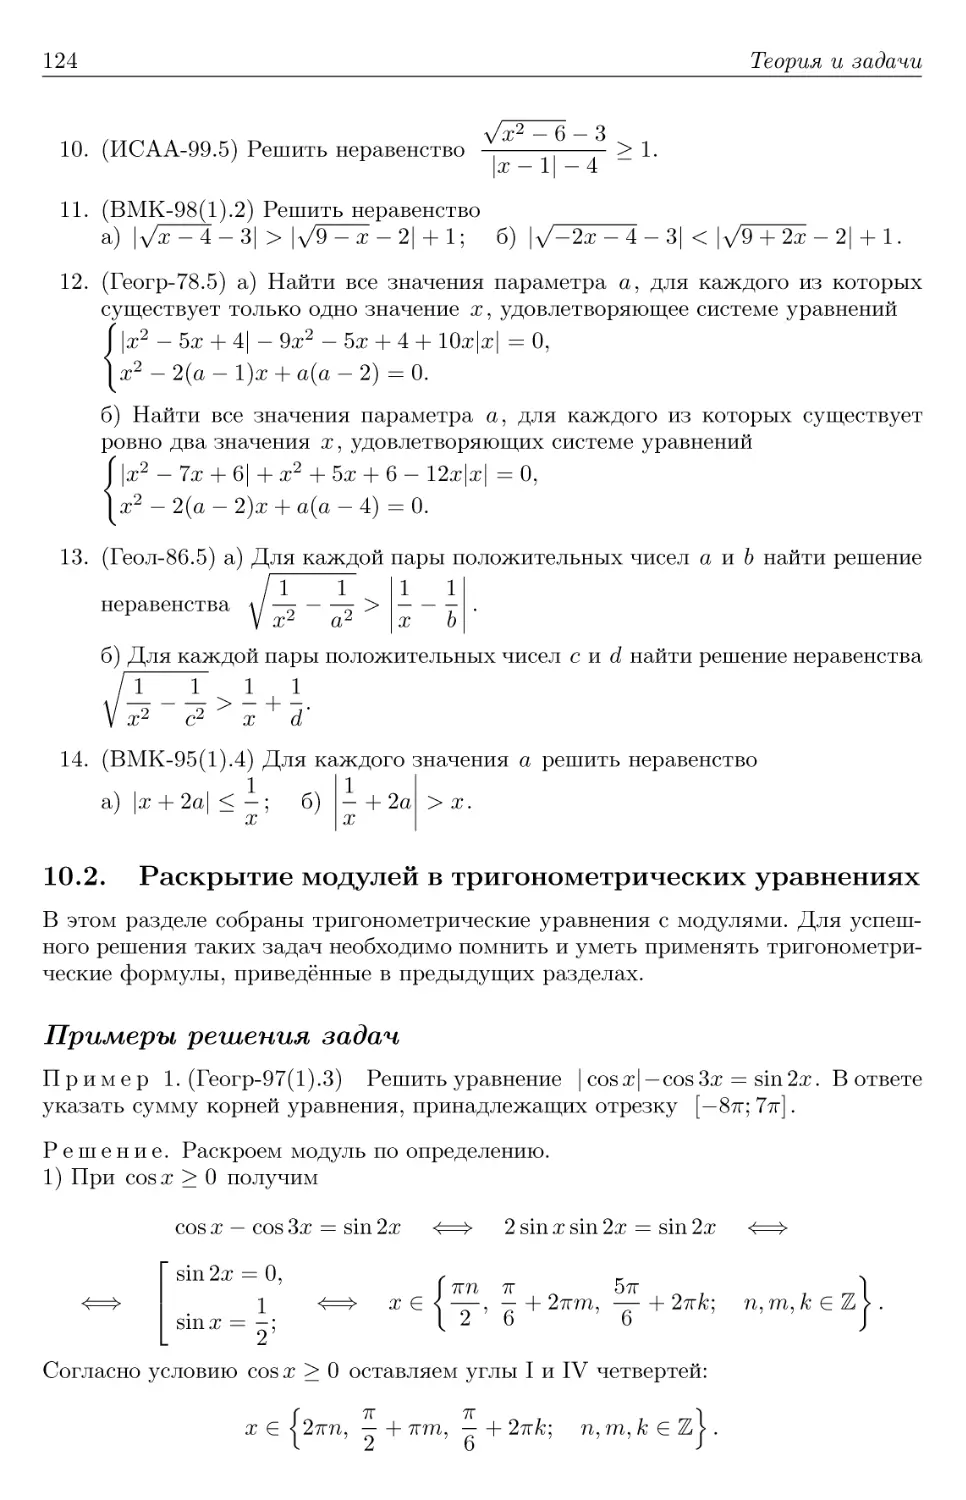 10.2. Раскрытие модулей в тригонометрических уравнениях